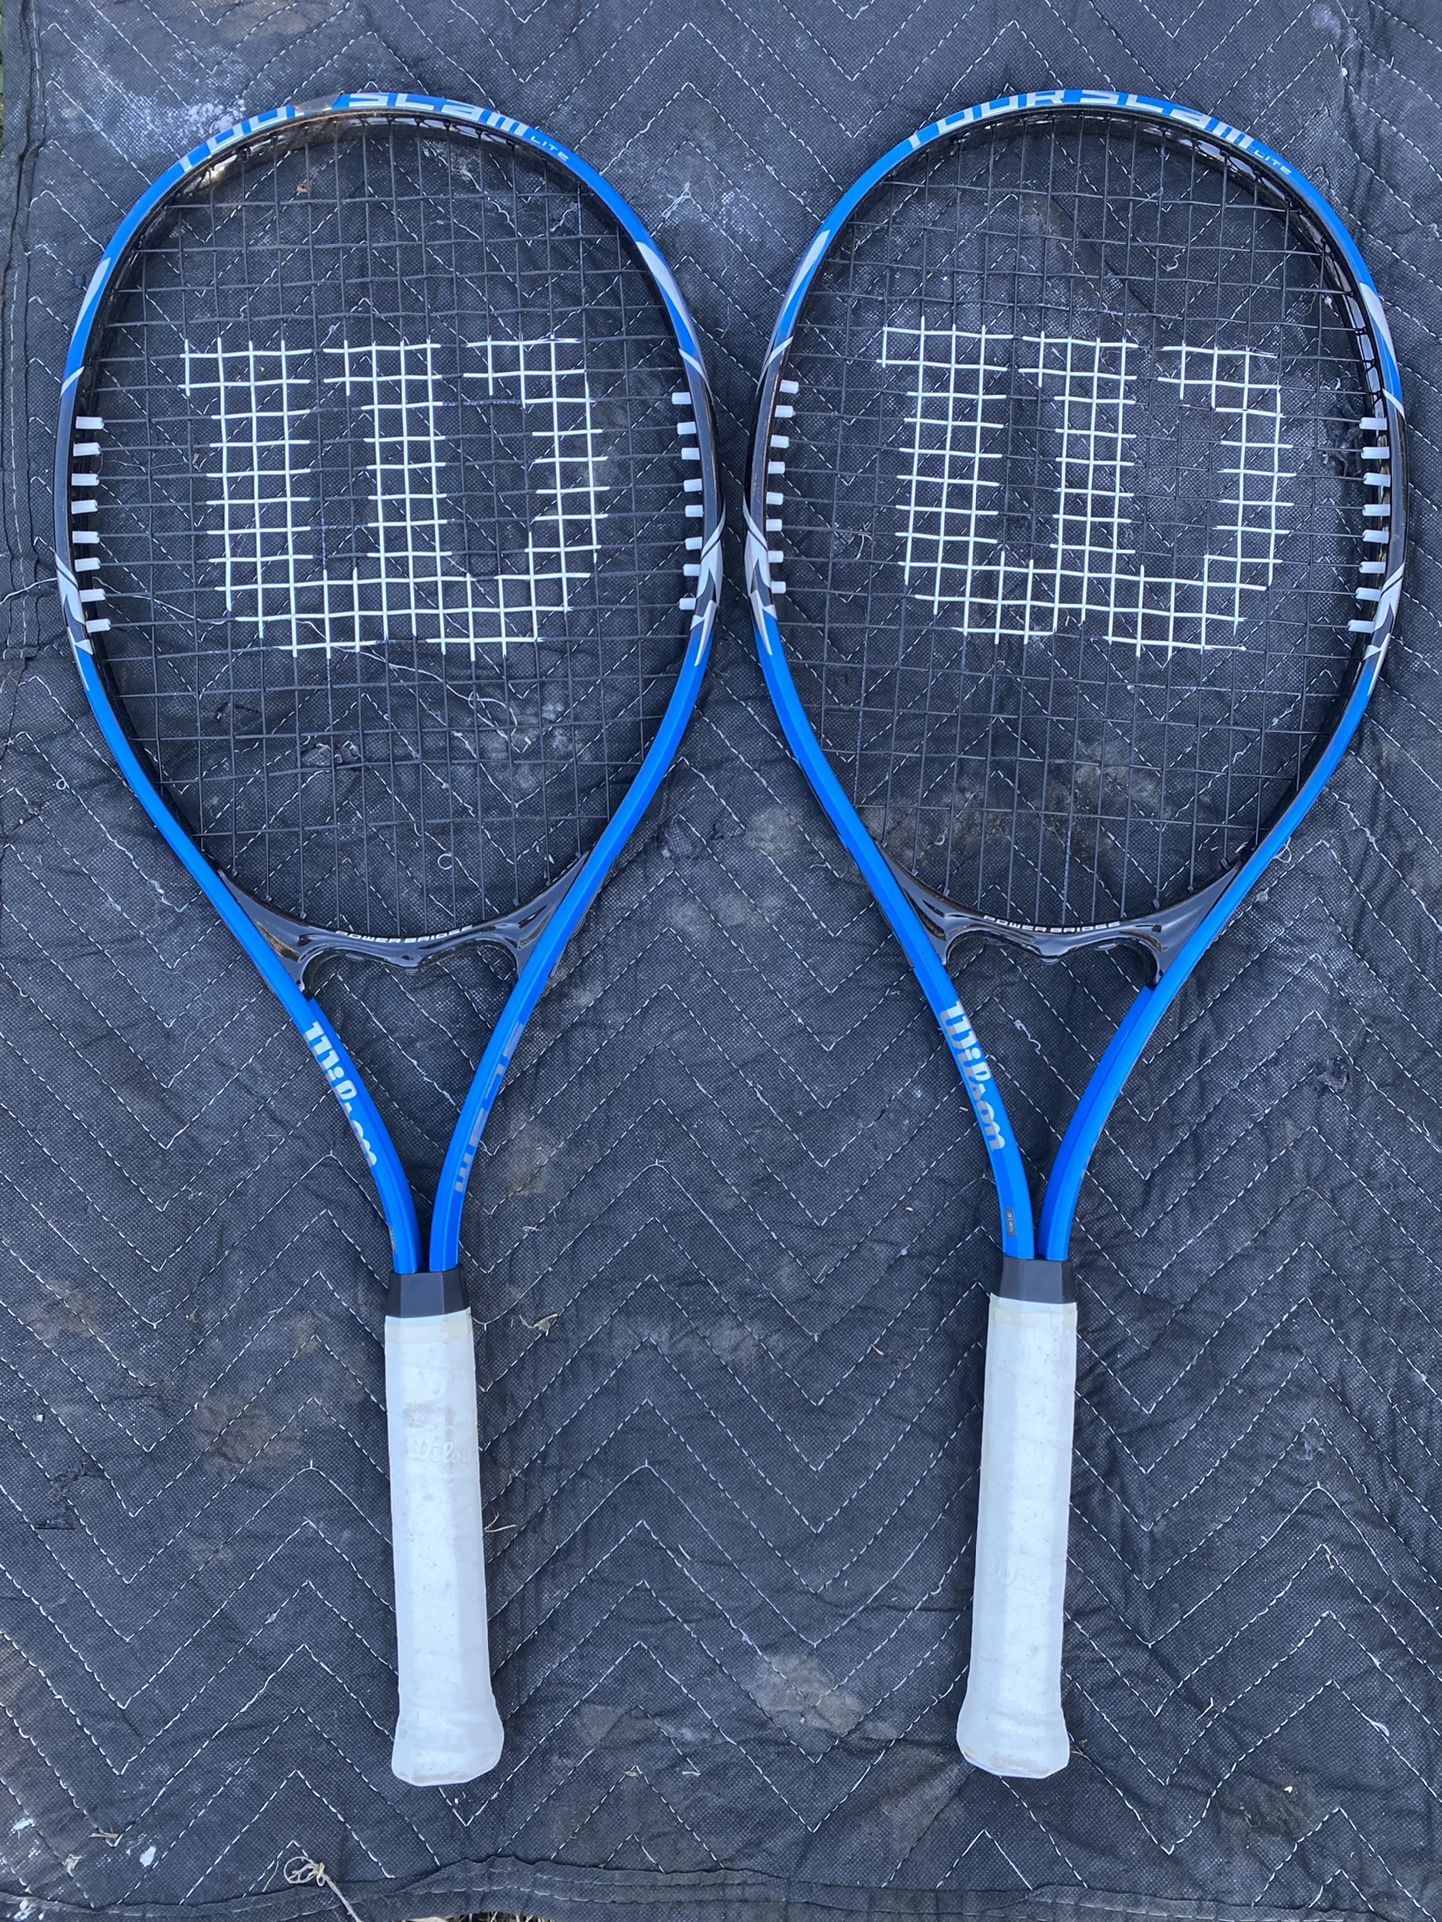 2 Wilson Tennis Rackets 